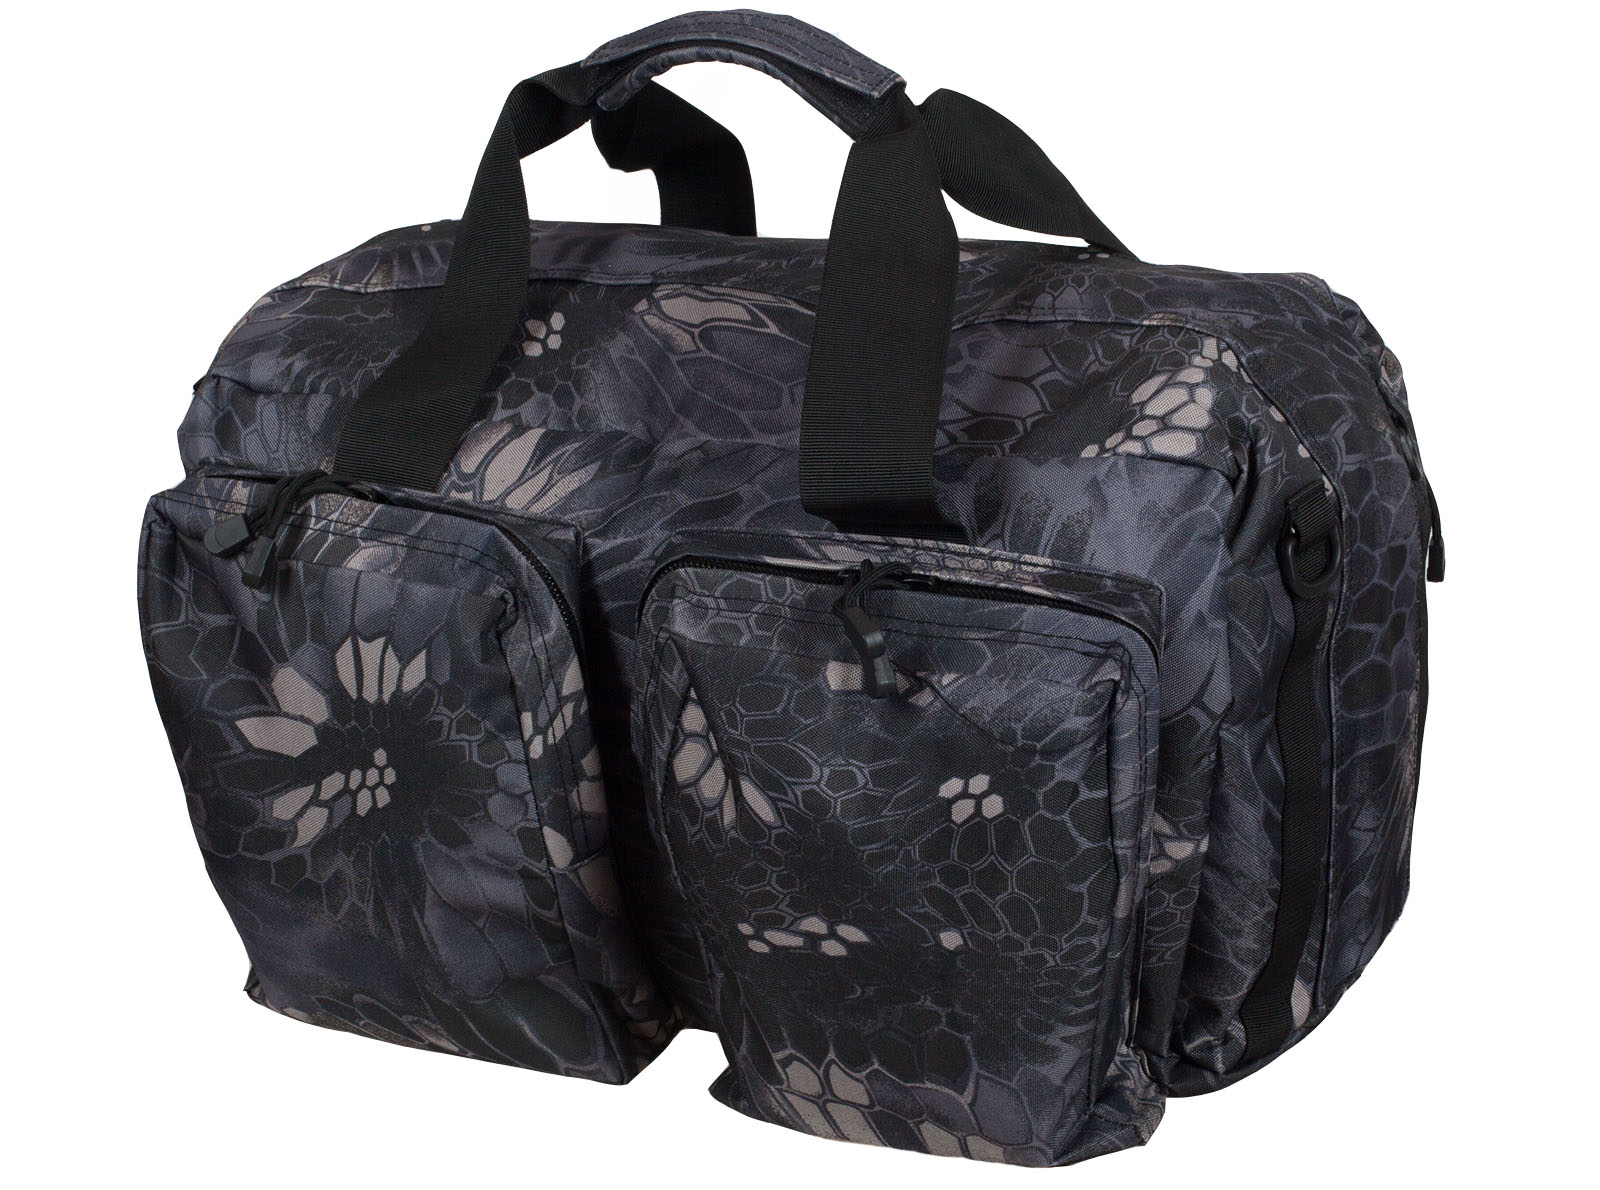 Мужские дорожные сумки камуфляж Kryptek Typhon заказать онлайн недорого